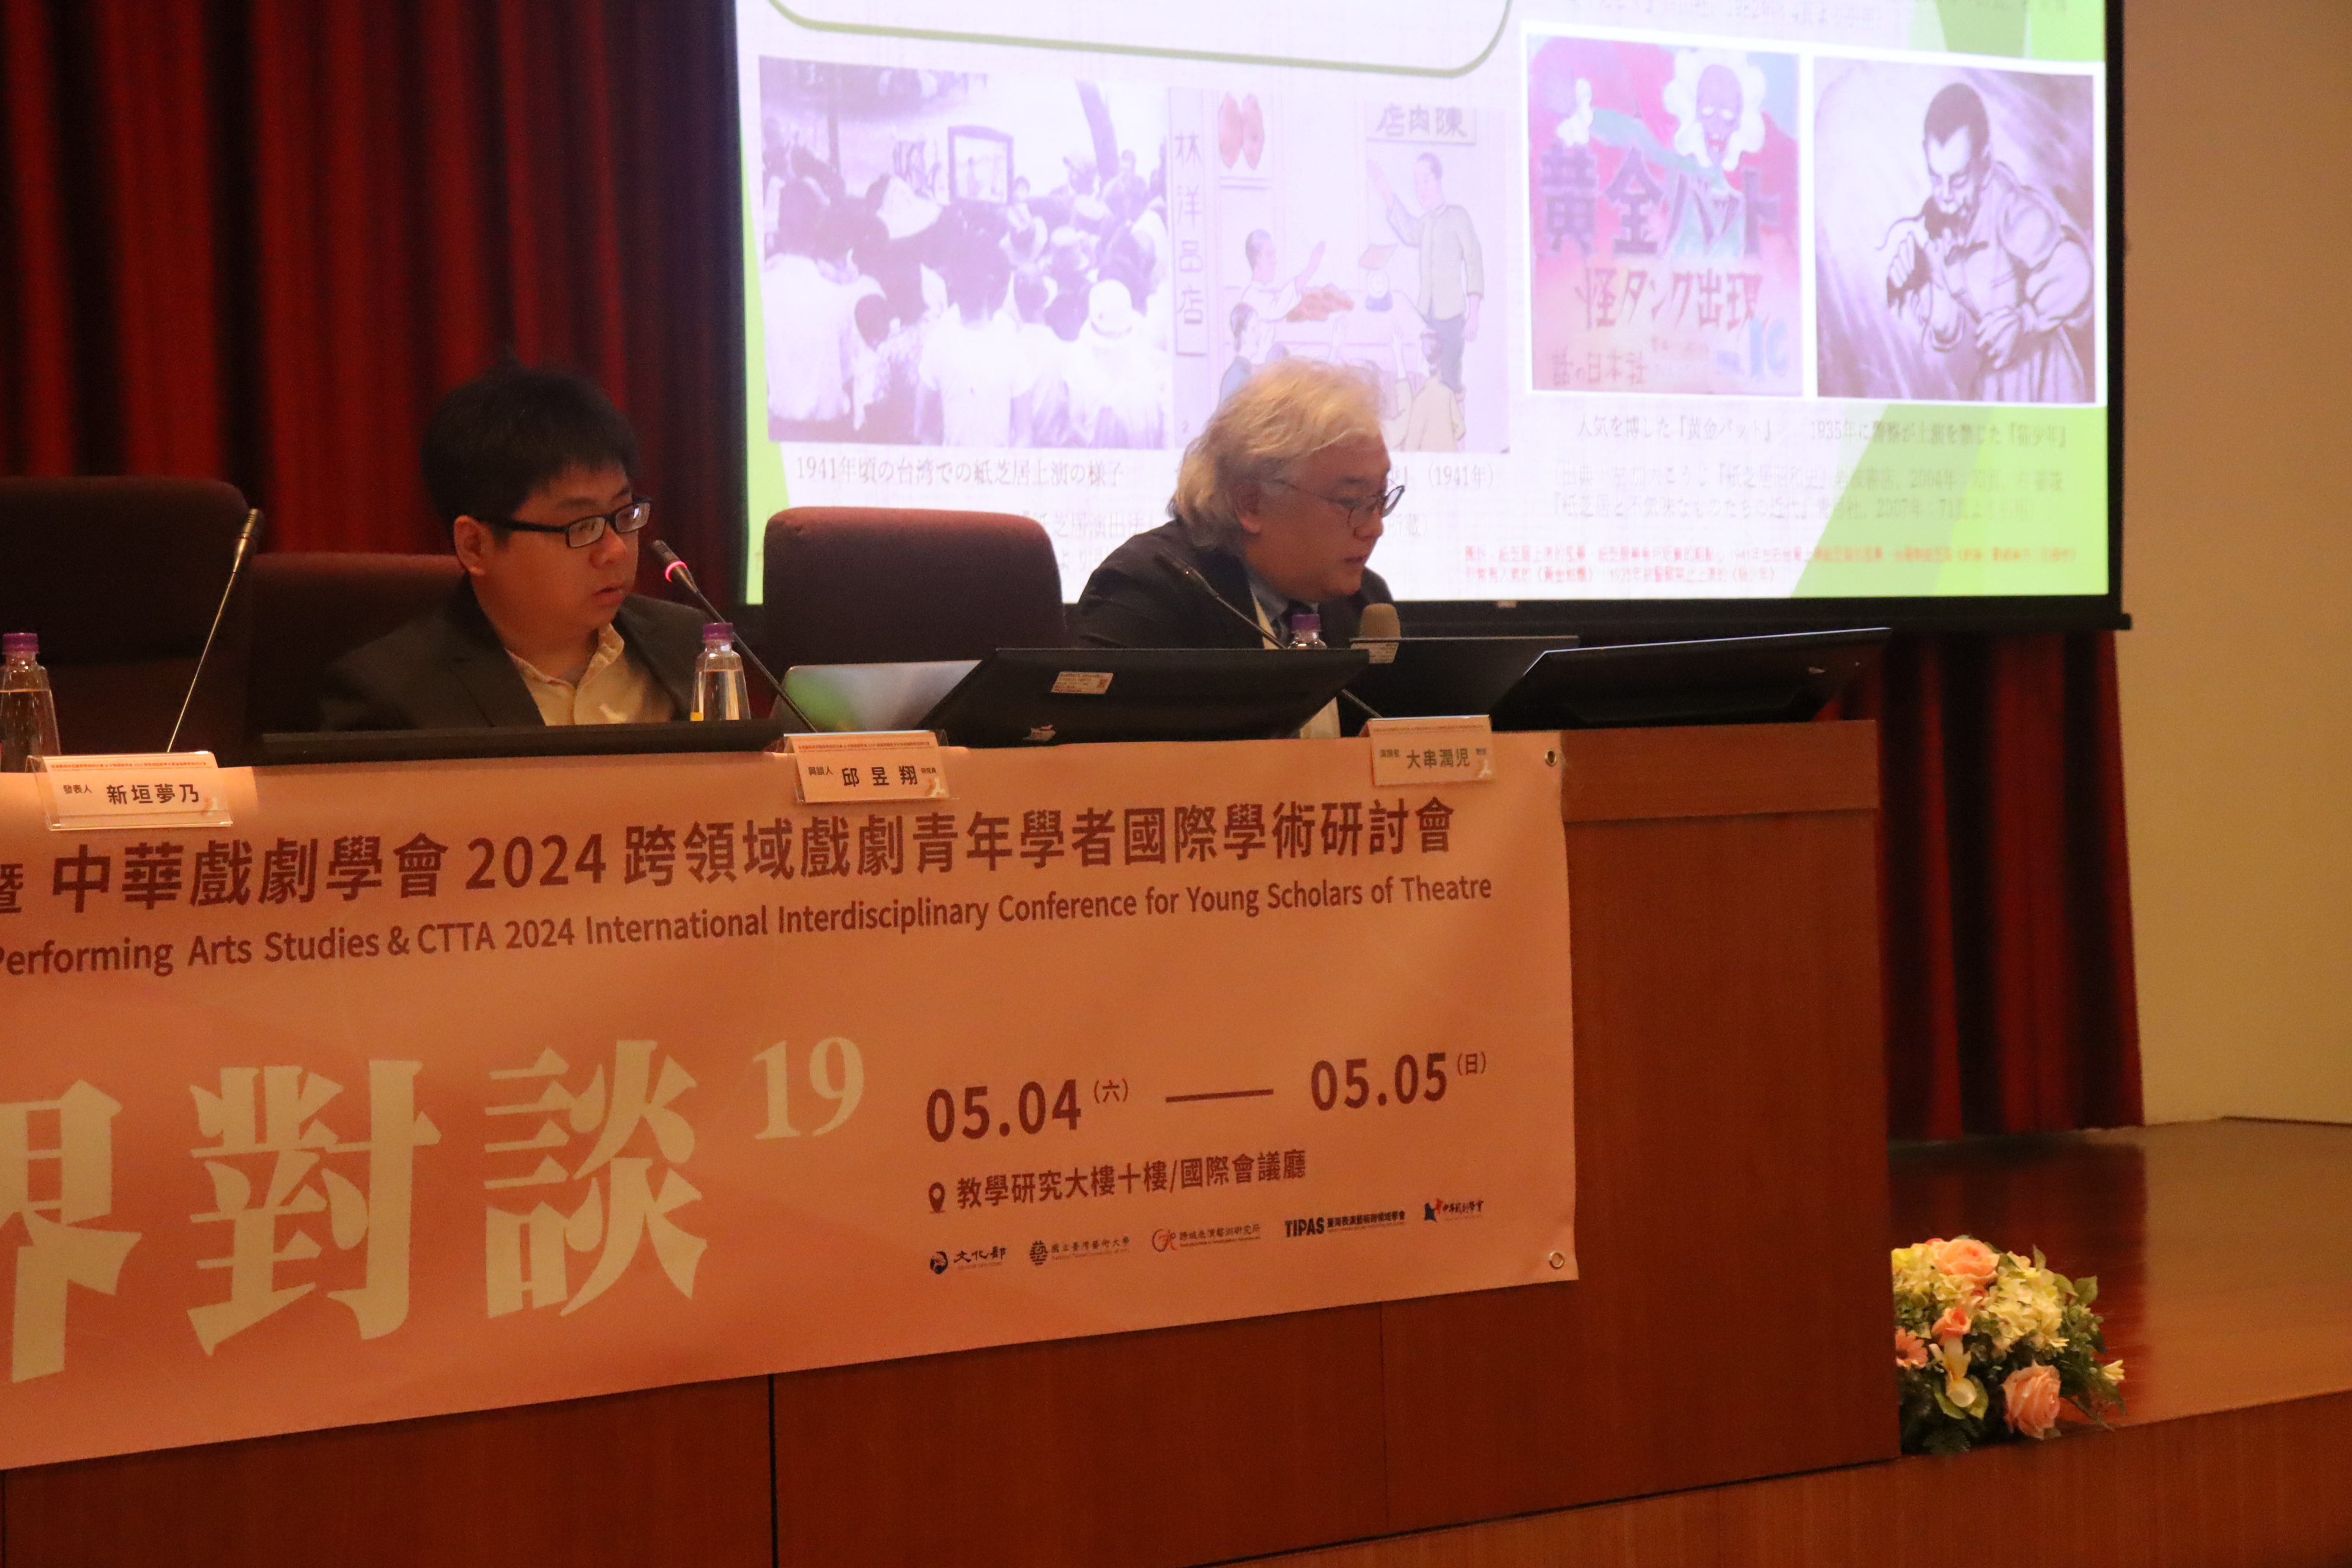 中華戲劇學會2024年跨領域戲劇青年學者國際學術研討會